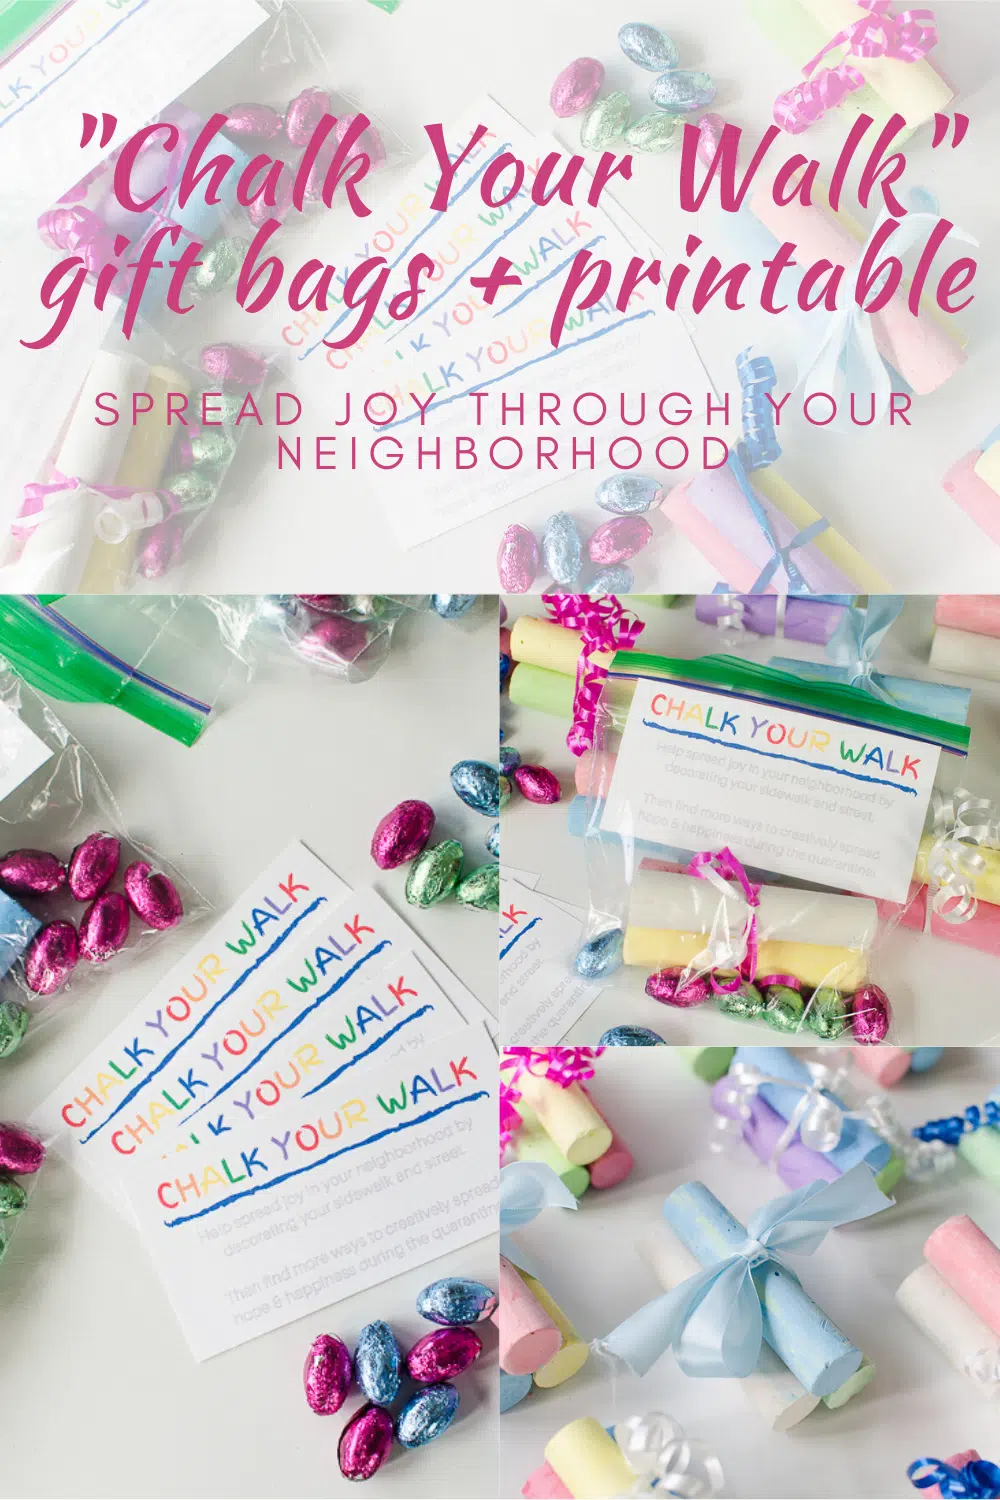 Chalk your walk neighborhood gift bags